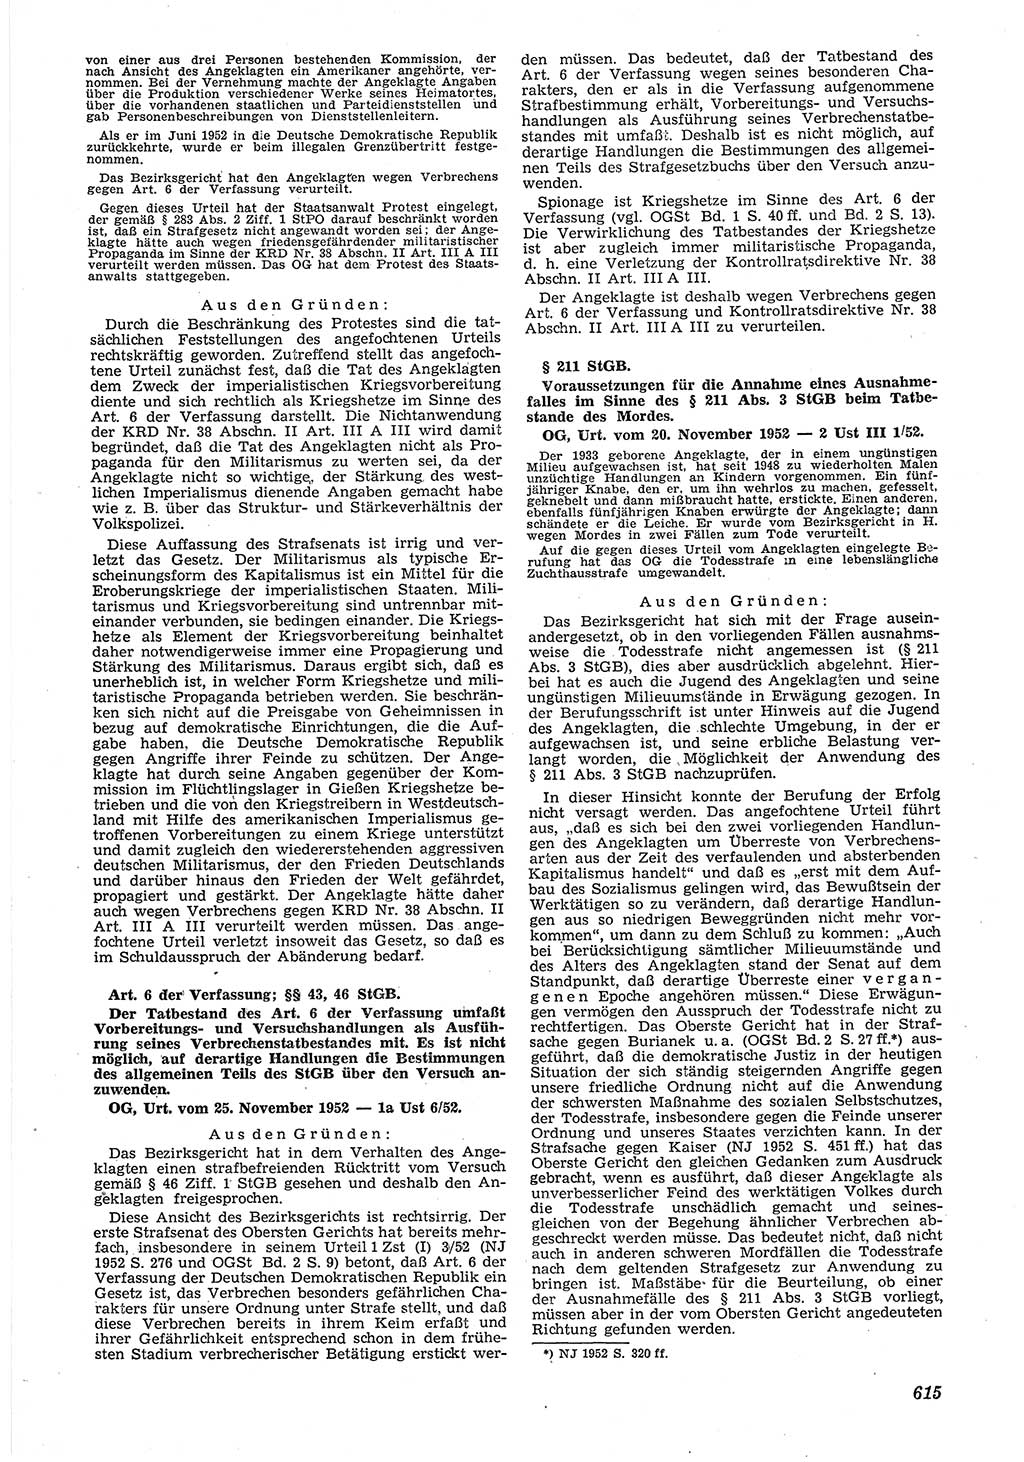 Neue Justiz (NJ), Zeitschrift für Recht und Rechtswissenschaft [Deutsche Demokratische Republik (DDR)], 6. Jahrgang 1952, Seite 615 (NJ DDR 1952, S. 615)